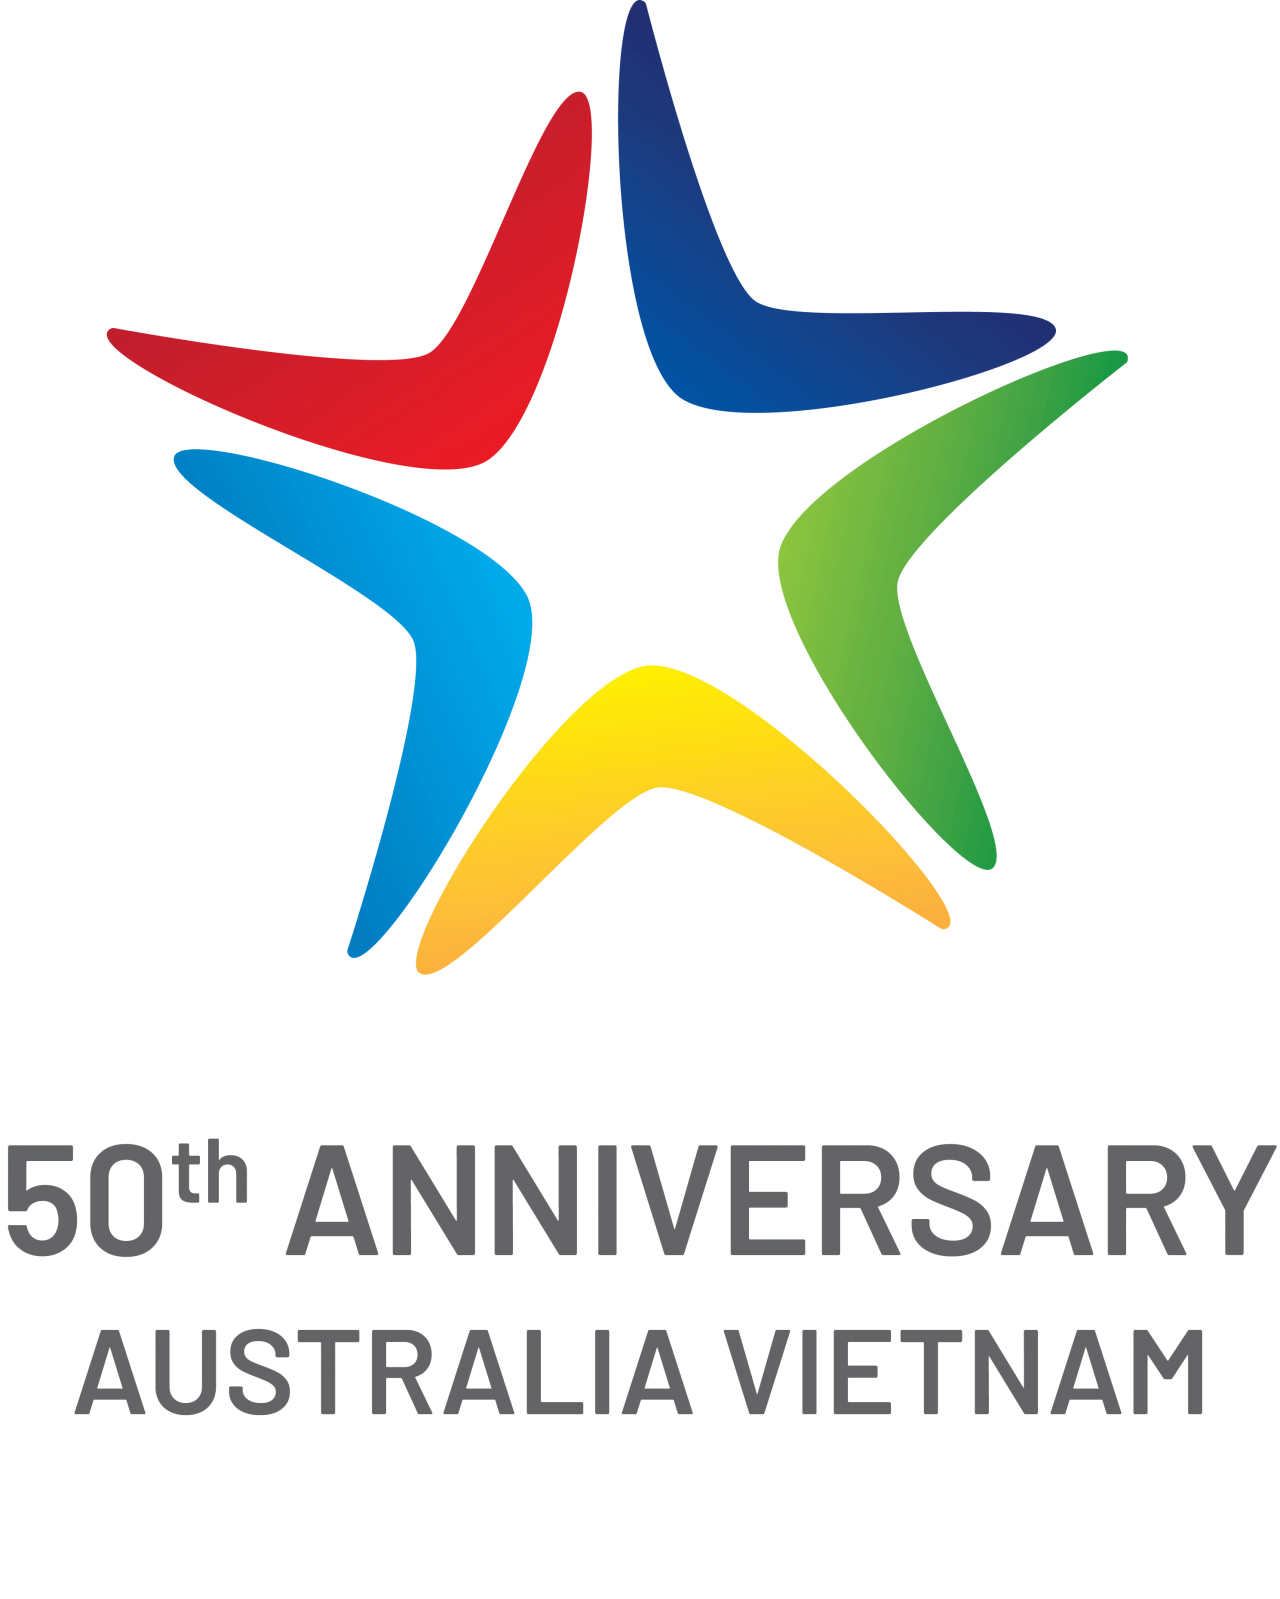 Công bố logo kỷ niệm 50 năm thiết lập quan hệ ngoại giao giữa Việt Nam và Australia